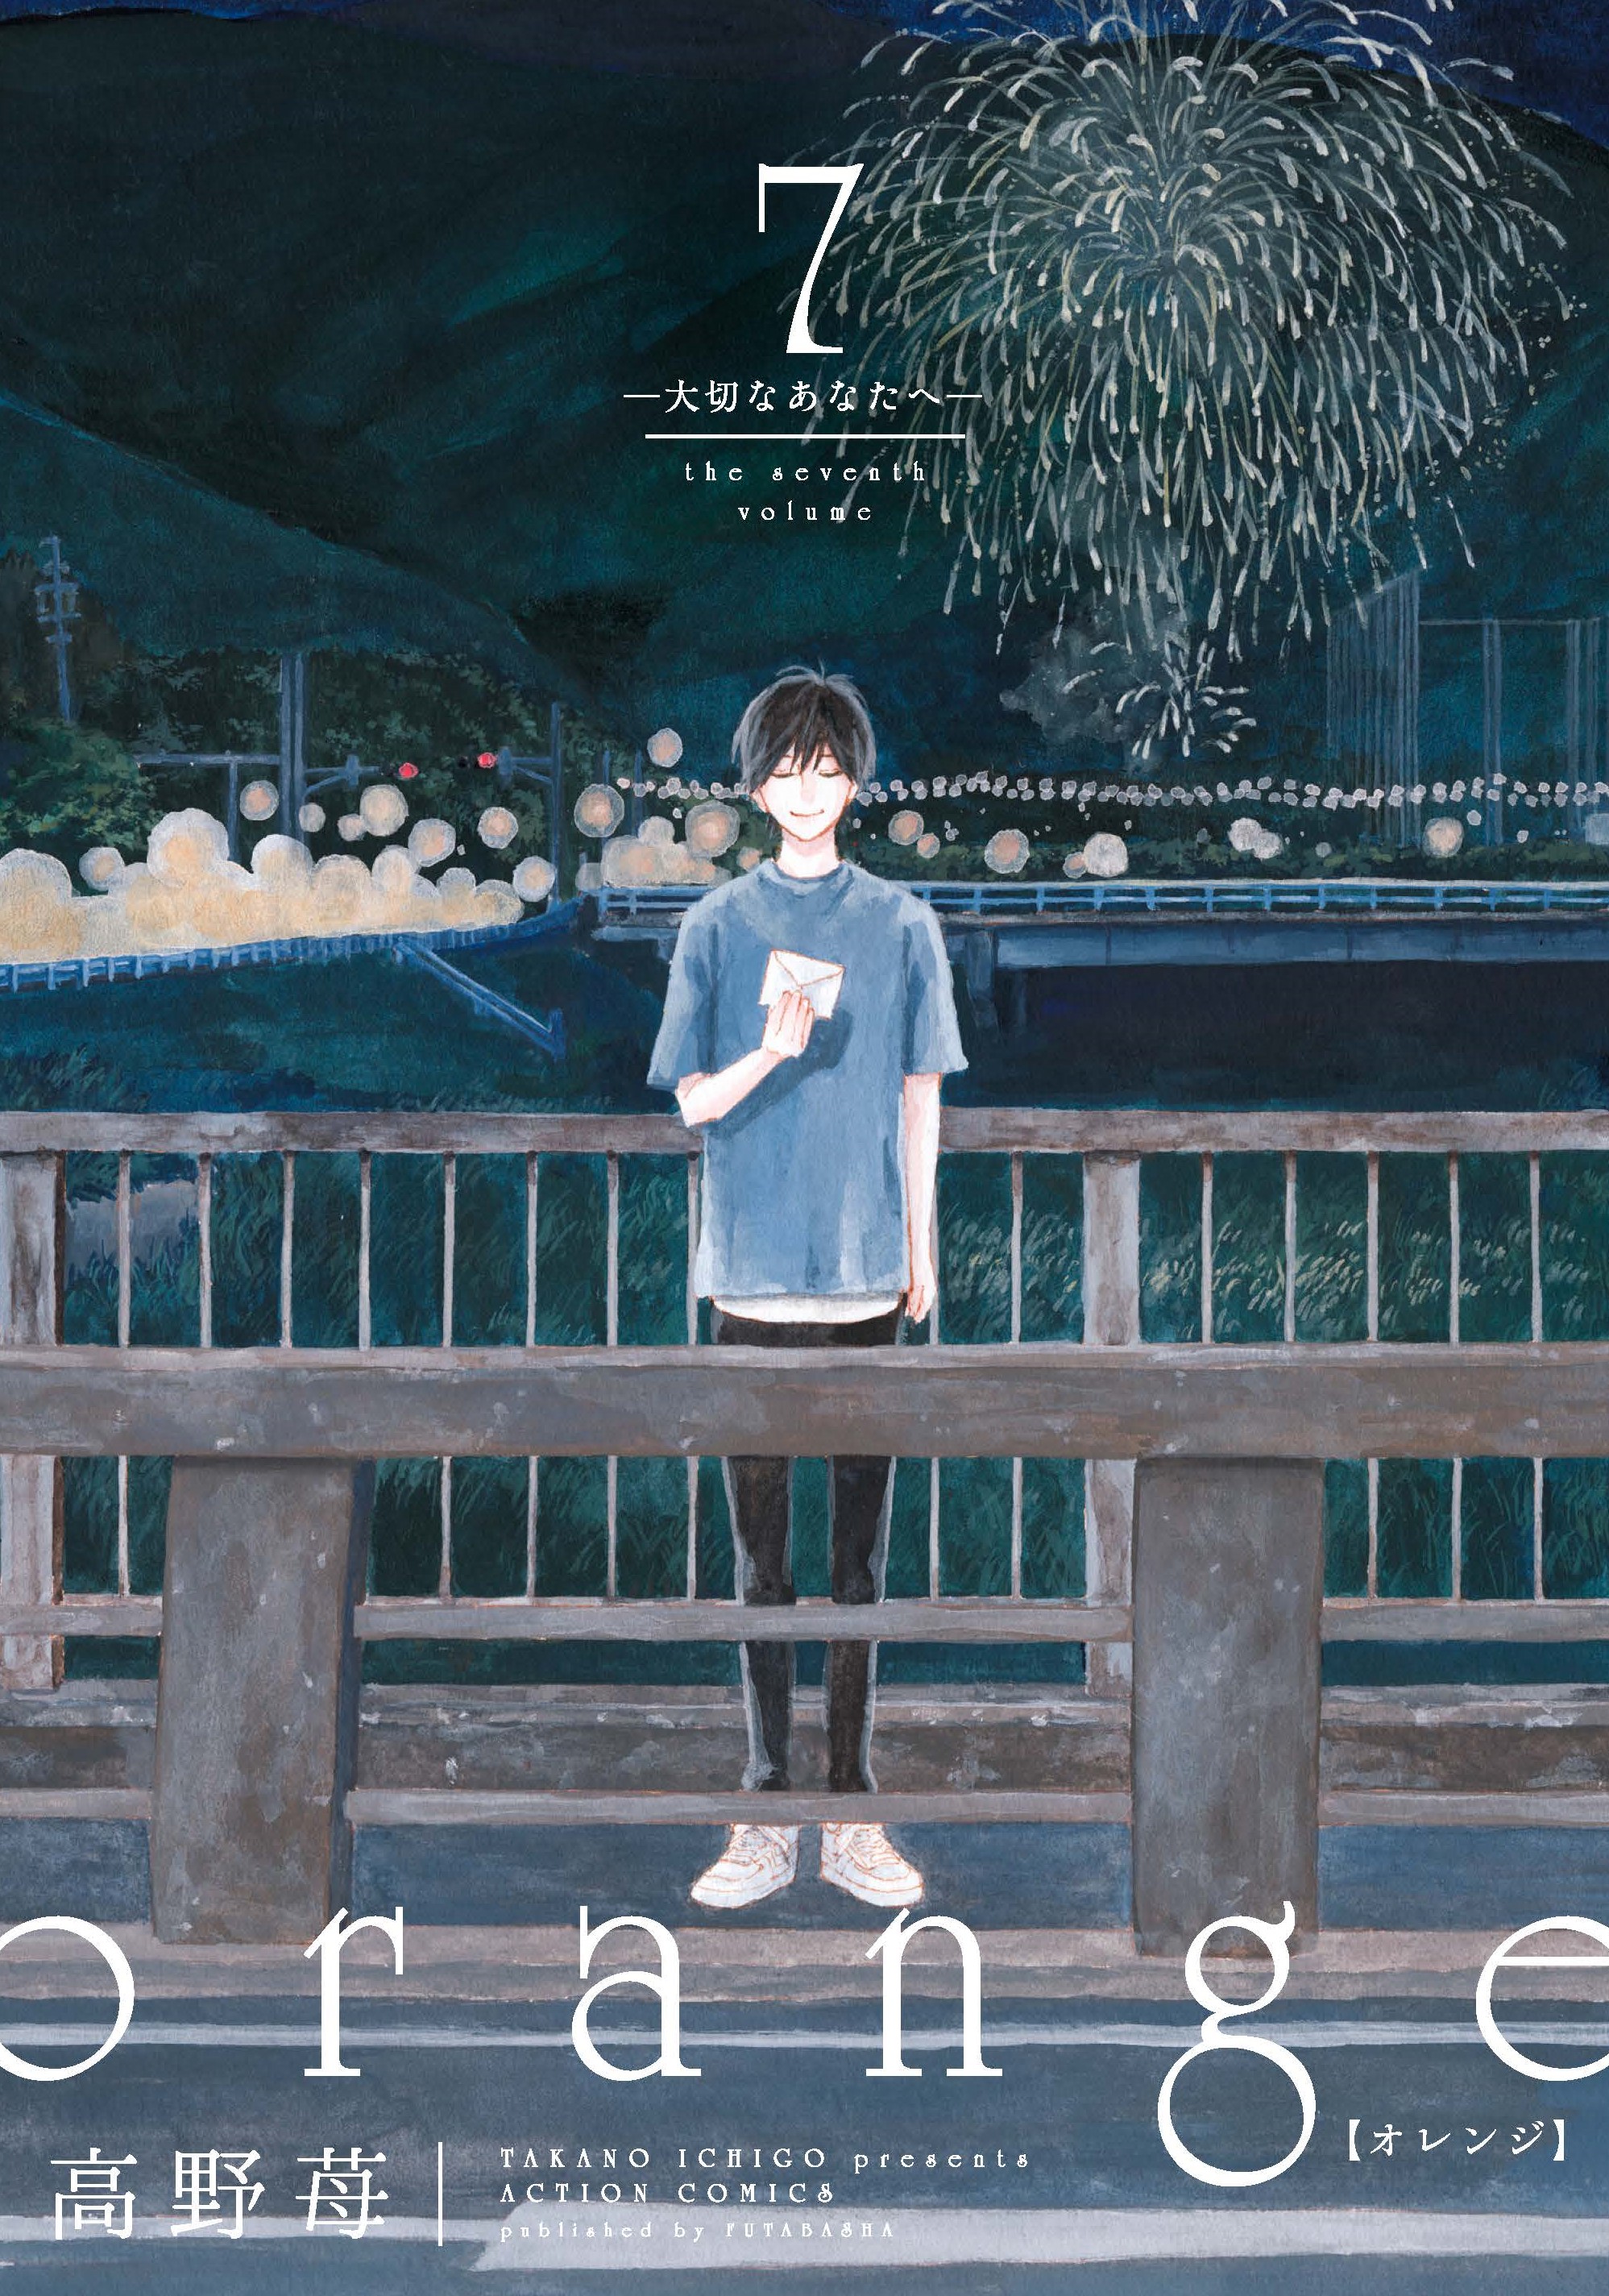 大ヒット青春ｓｆラブストーリー Orange ついに完結 コミックス最終第７巻が本日発売 株式会社双葉社のプレスリリース